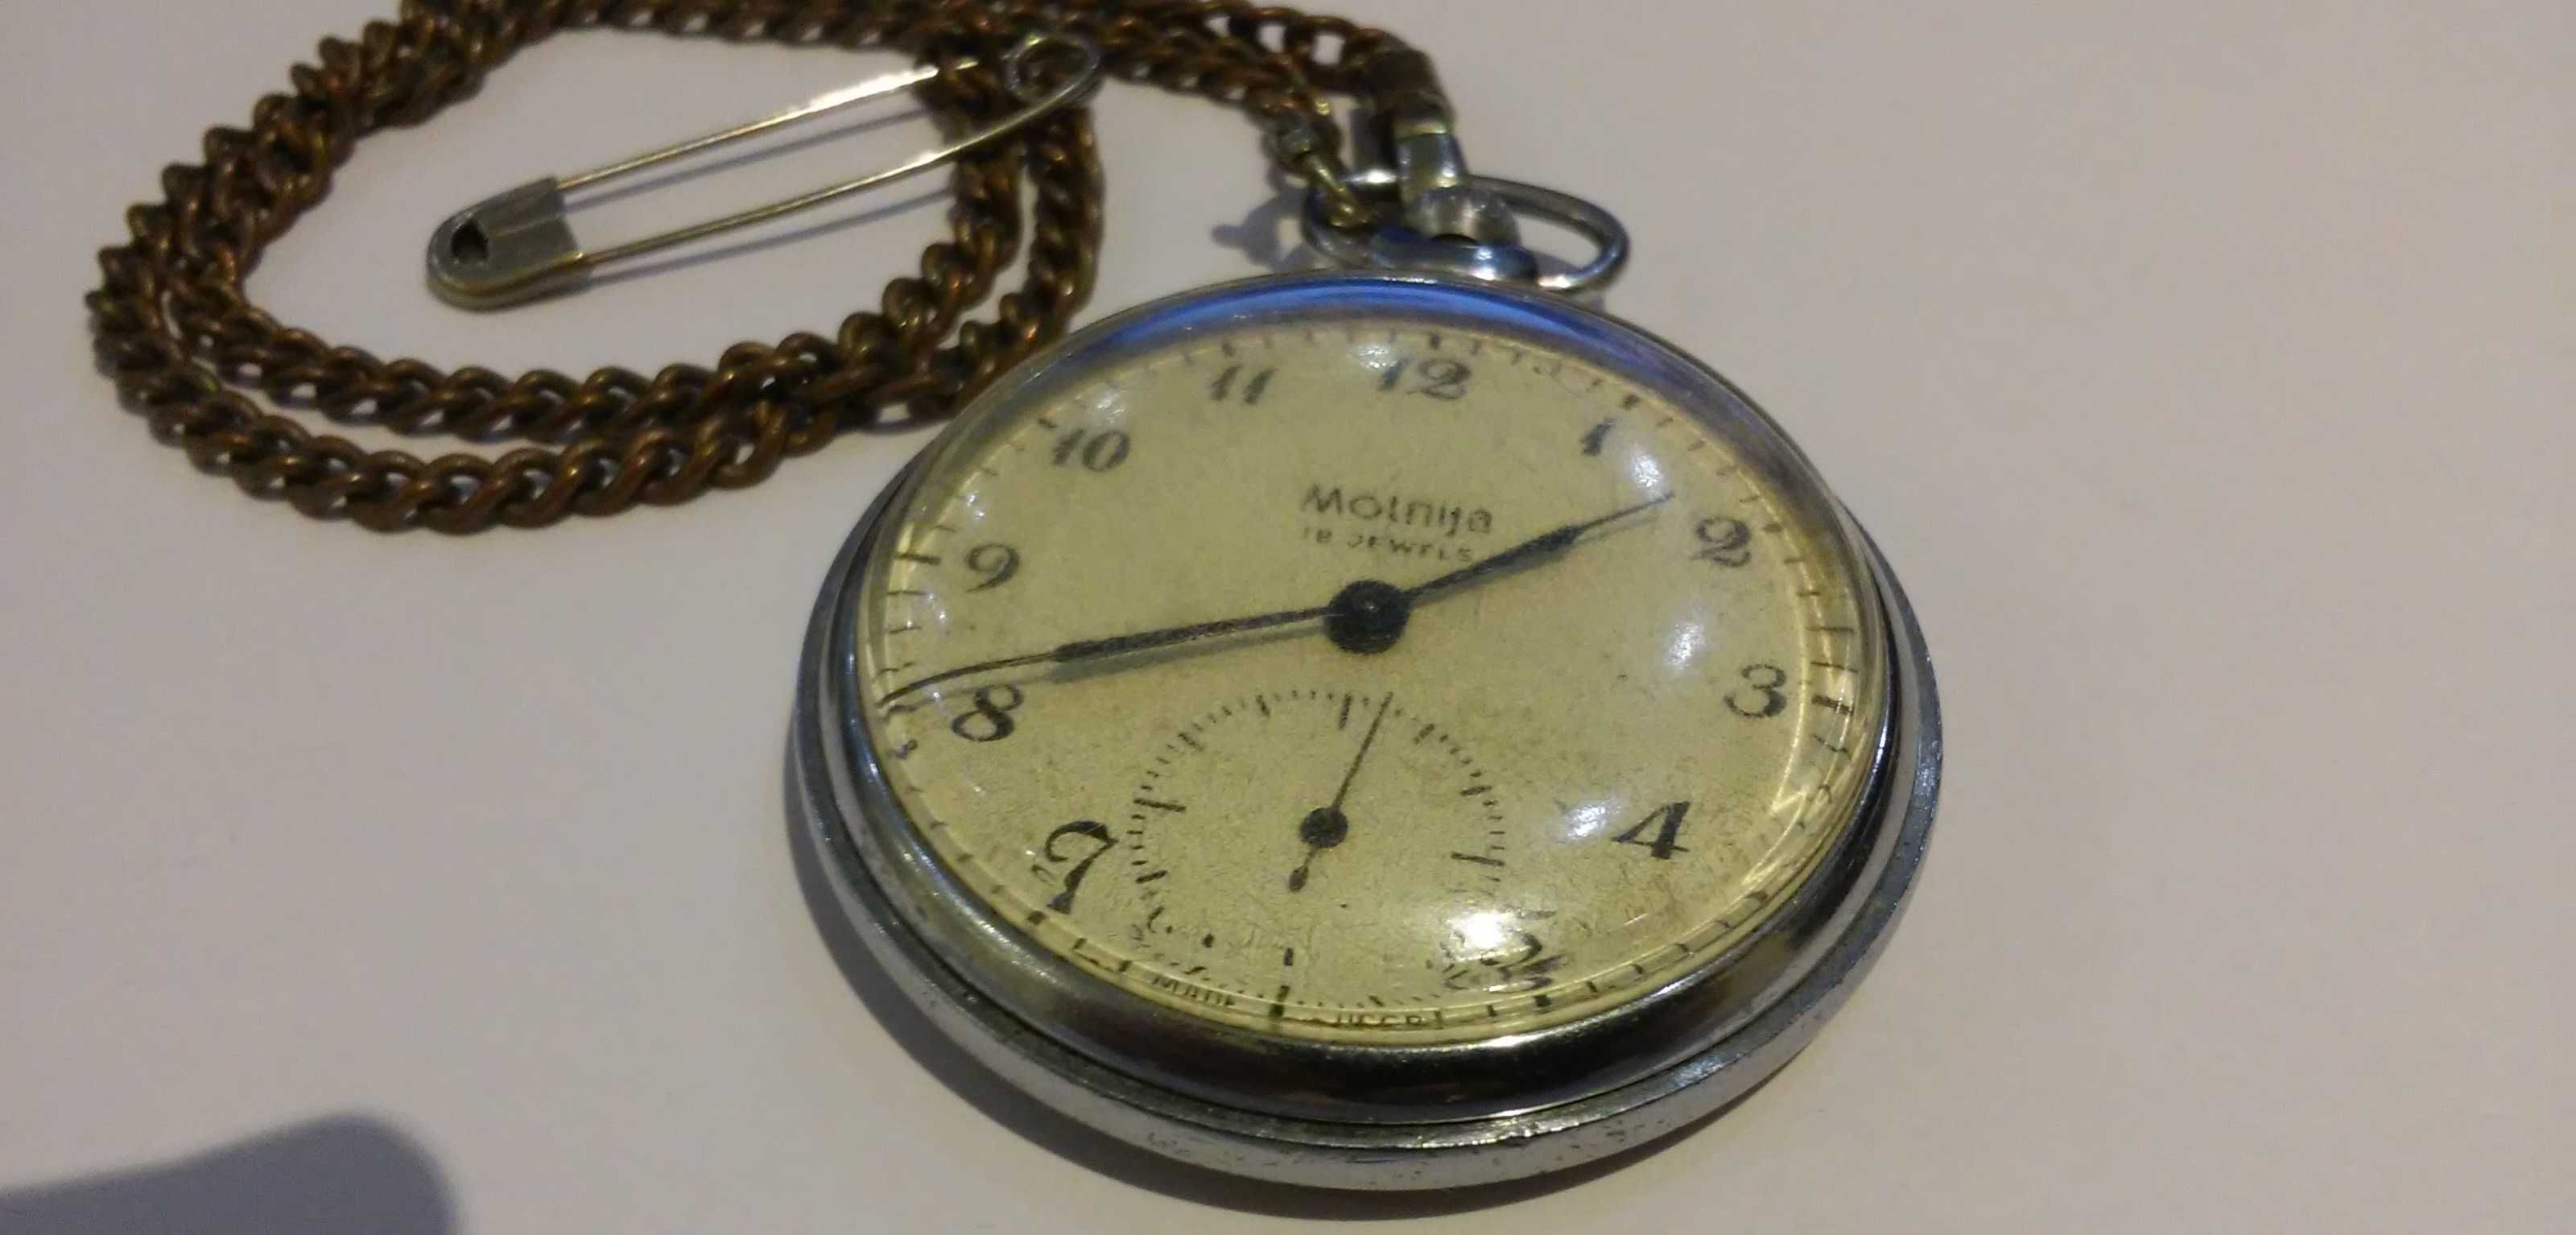 Винтажные карманные часы Molnija USSR 18 jewels. Экспортный вариант.